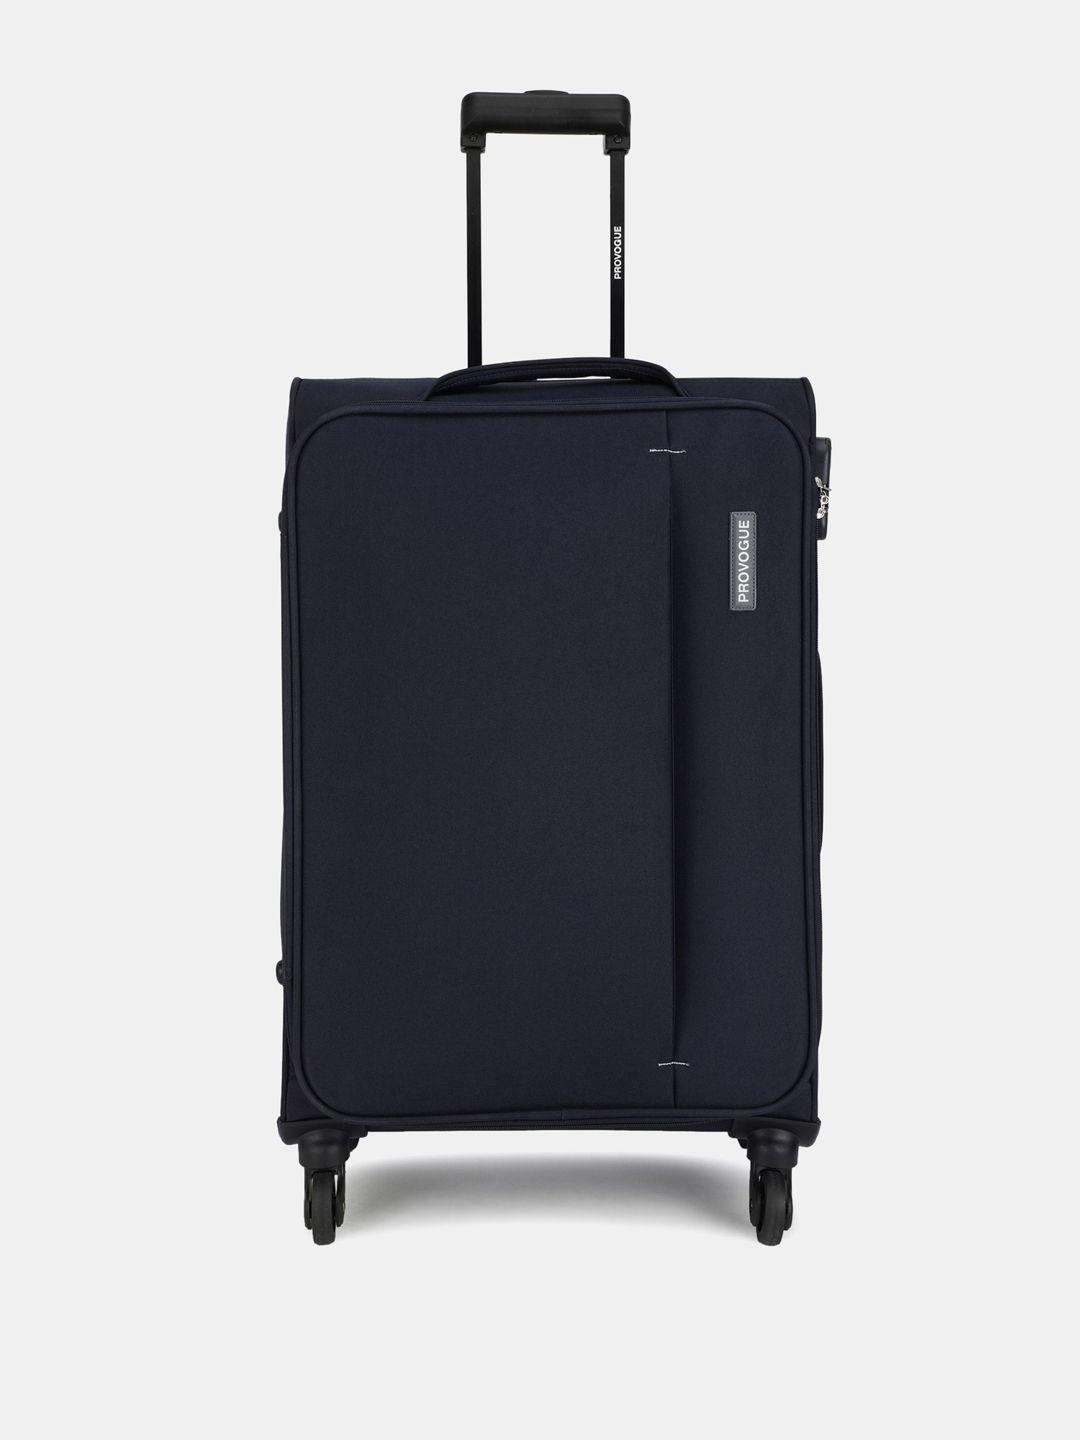 provogue-unisex-large-trolley-suitcase